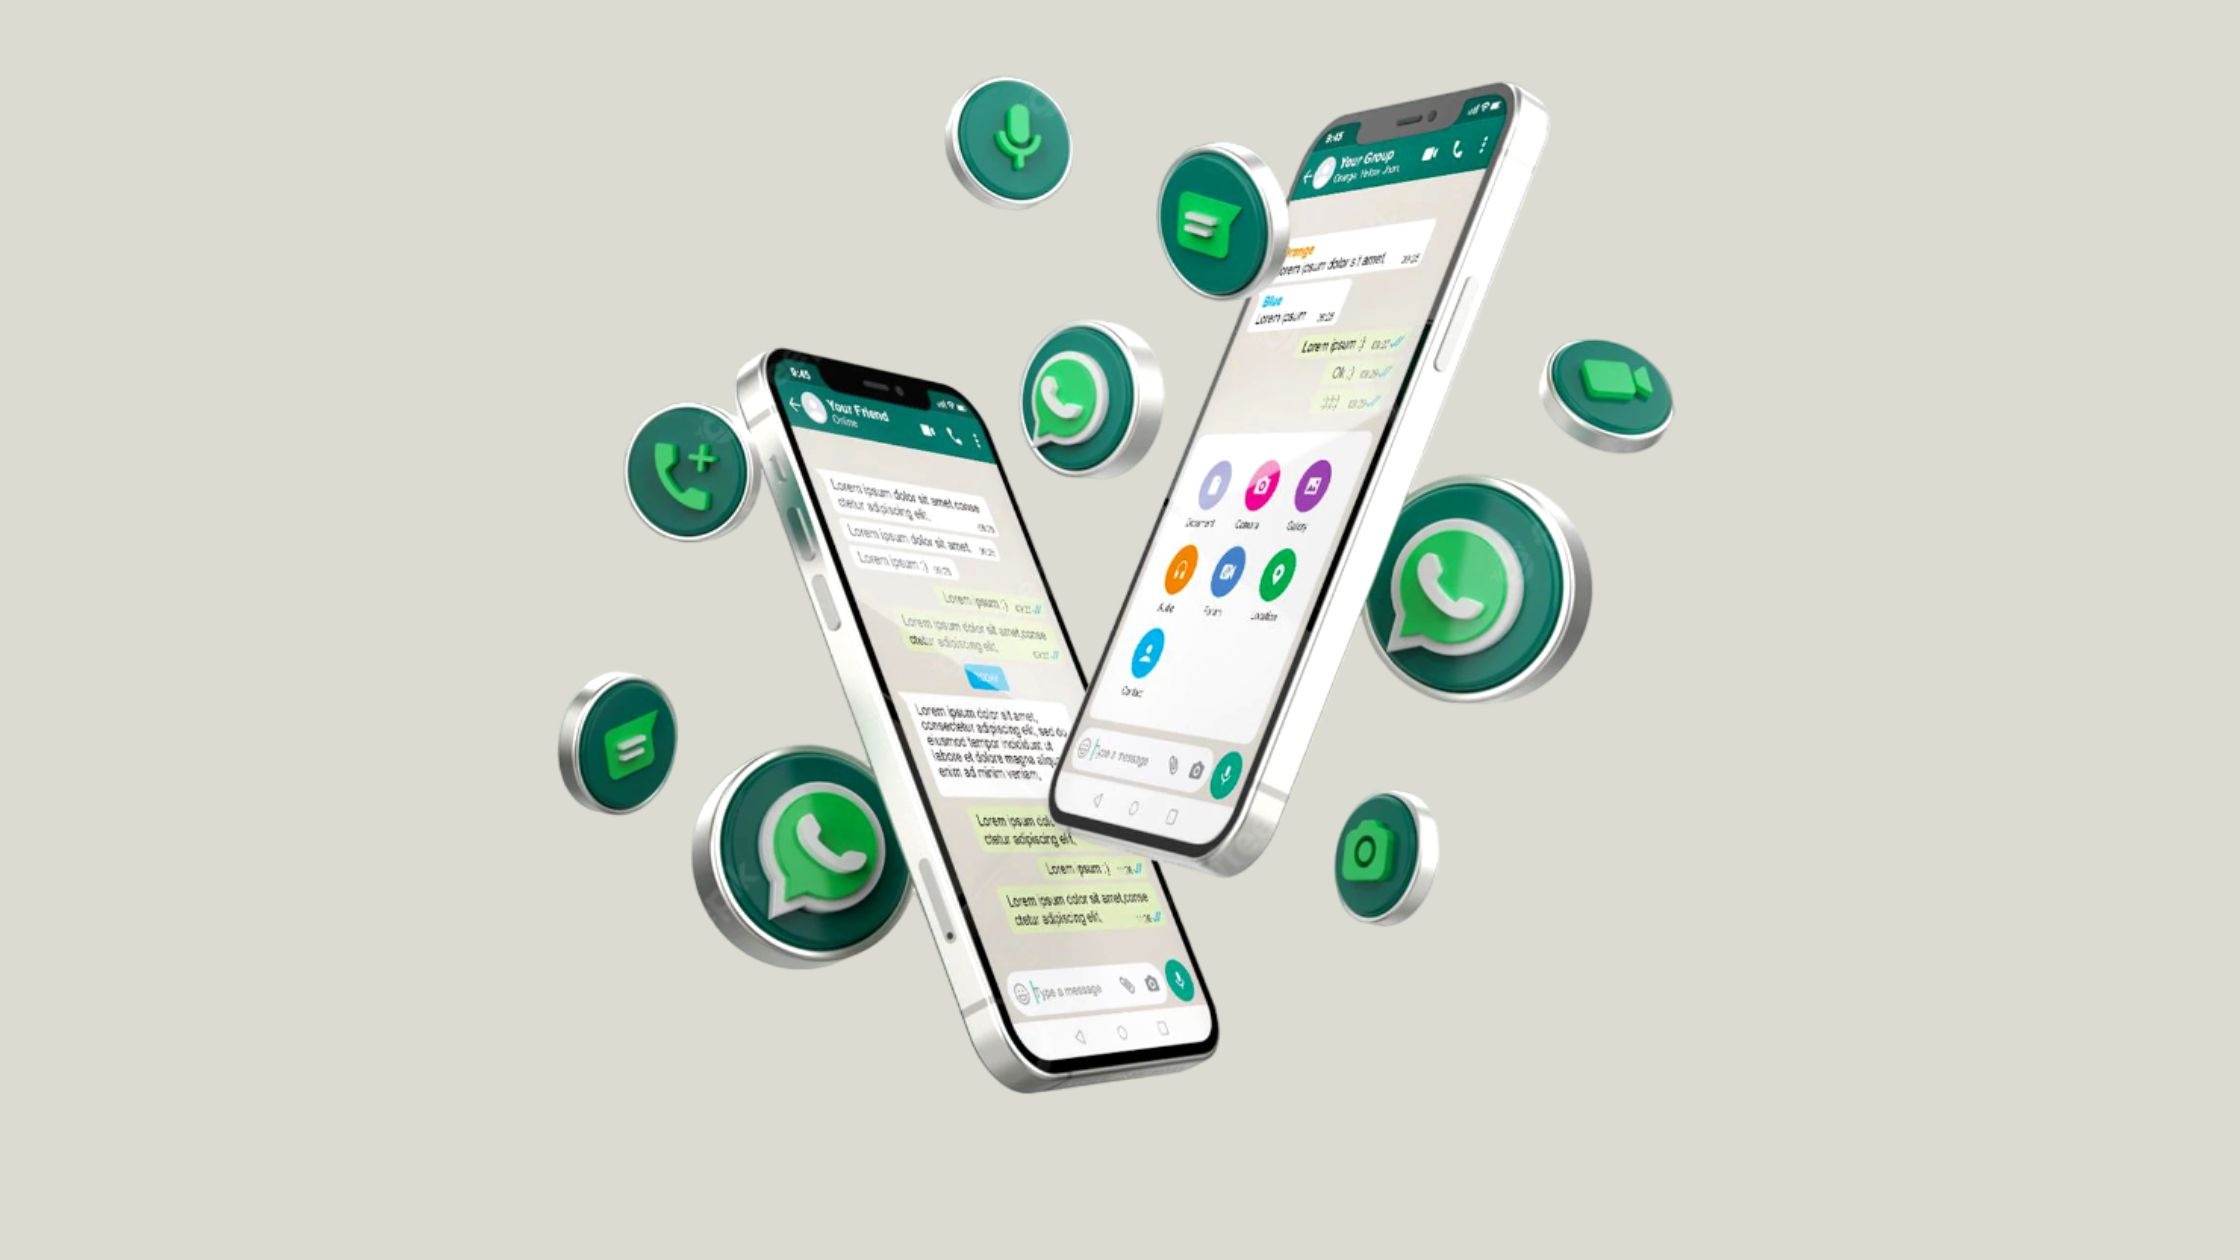 Palabras prohibidas en WhatsApp: ¿realmente existen?